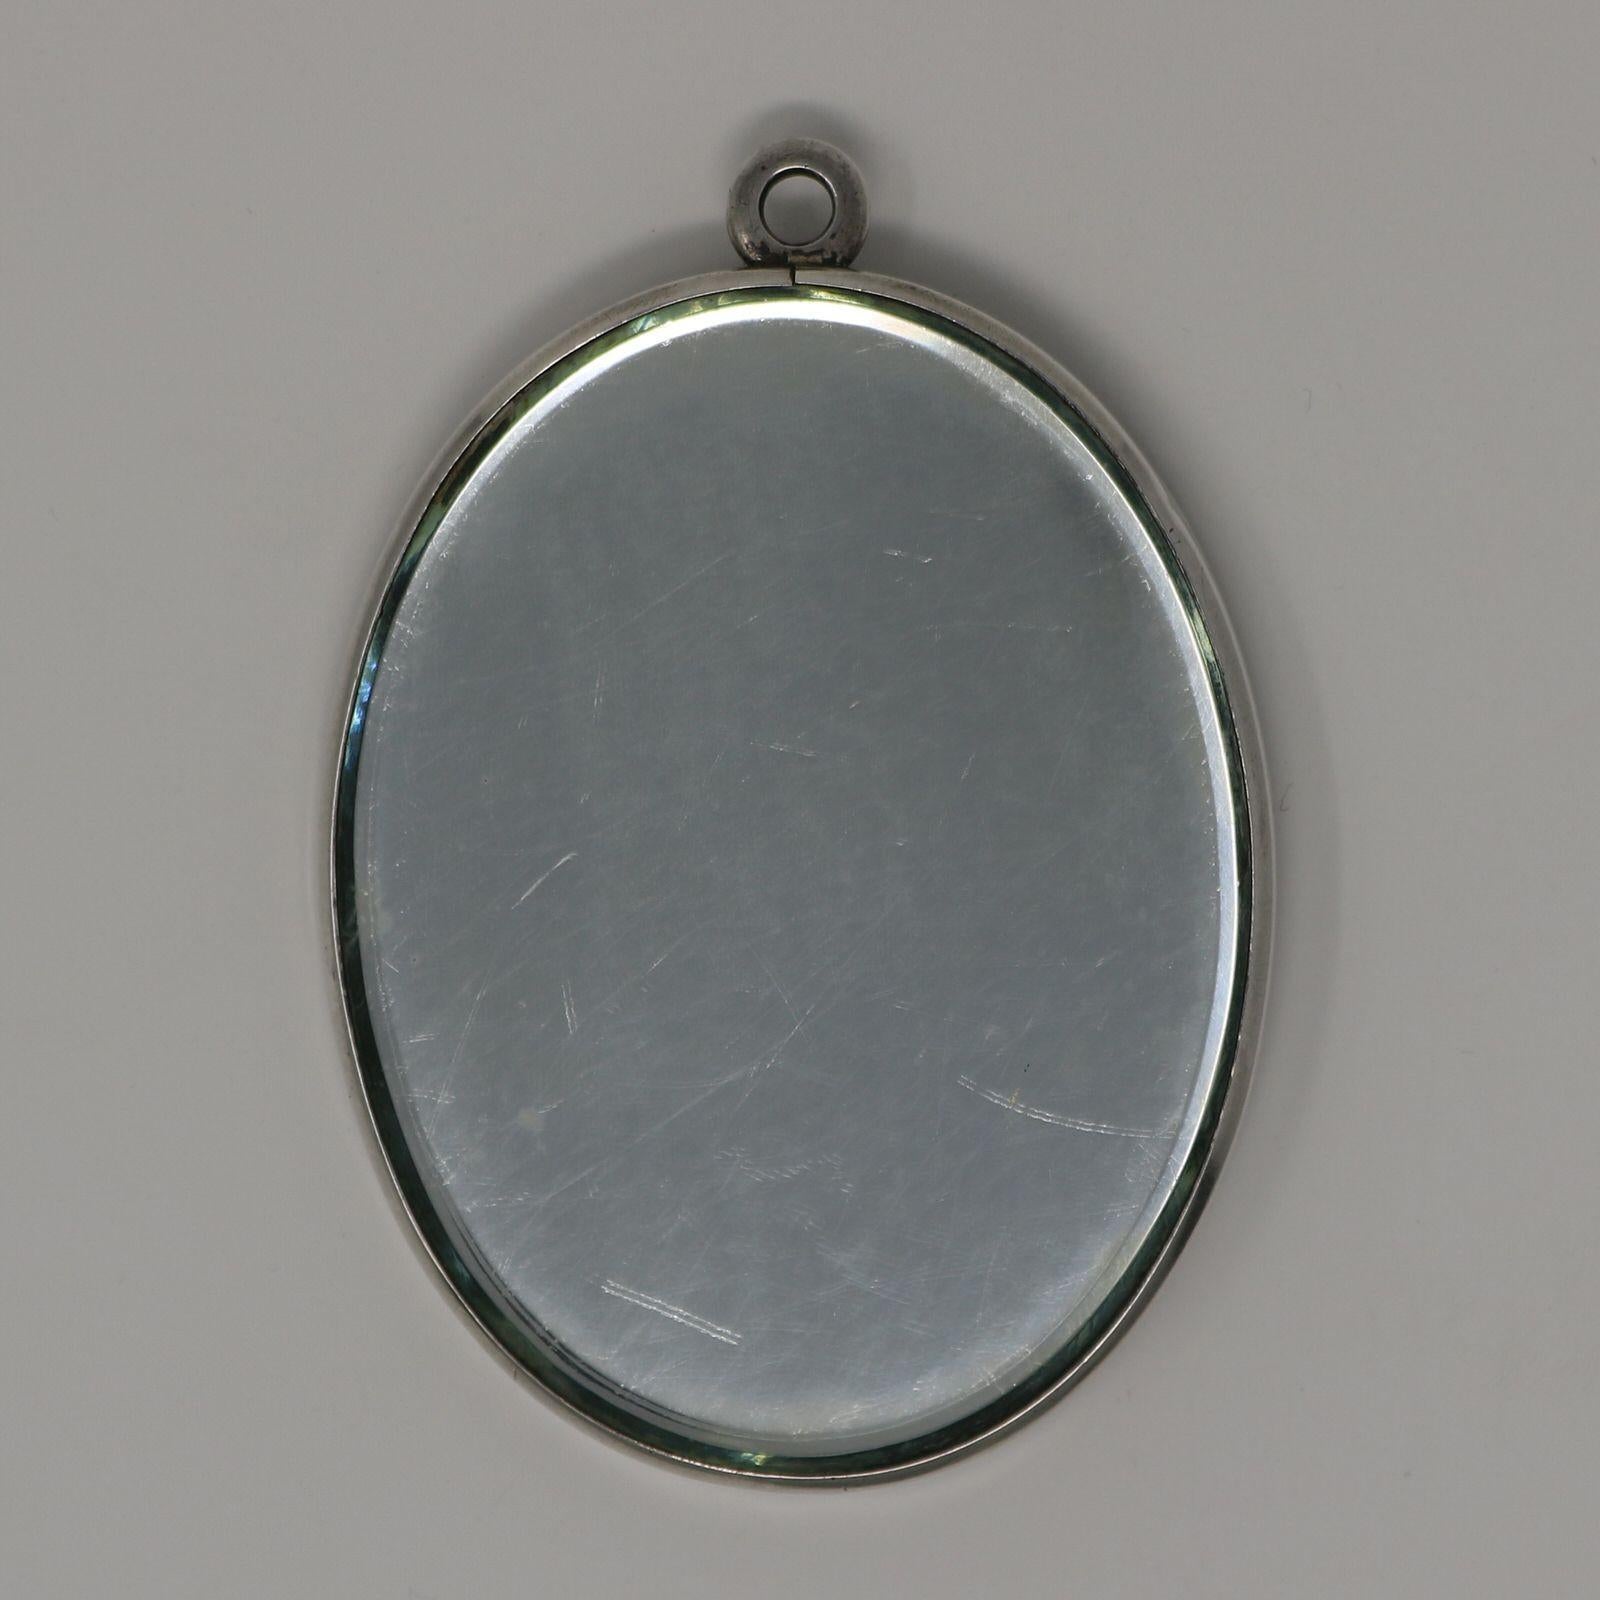 Miroir 'Psyché' en verre clair et dépoli de René Lalique. L'une des faces de cette pièce comporte un miroir, l'autre une tablette en verre moulé. Tous deux sont placés dans un cadre métallique. Ce motif représente une femme nue et ailée. Elle